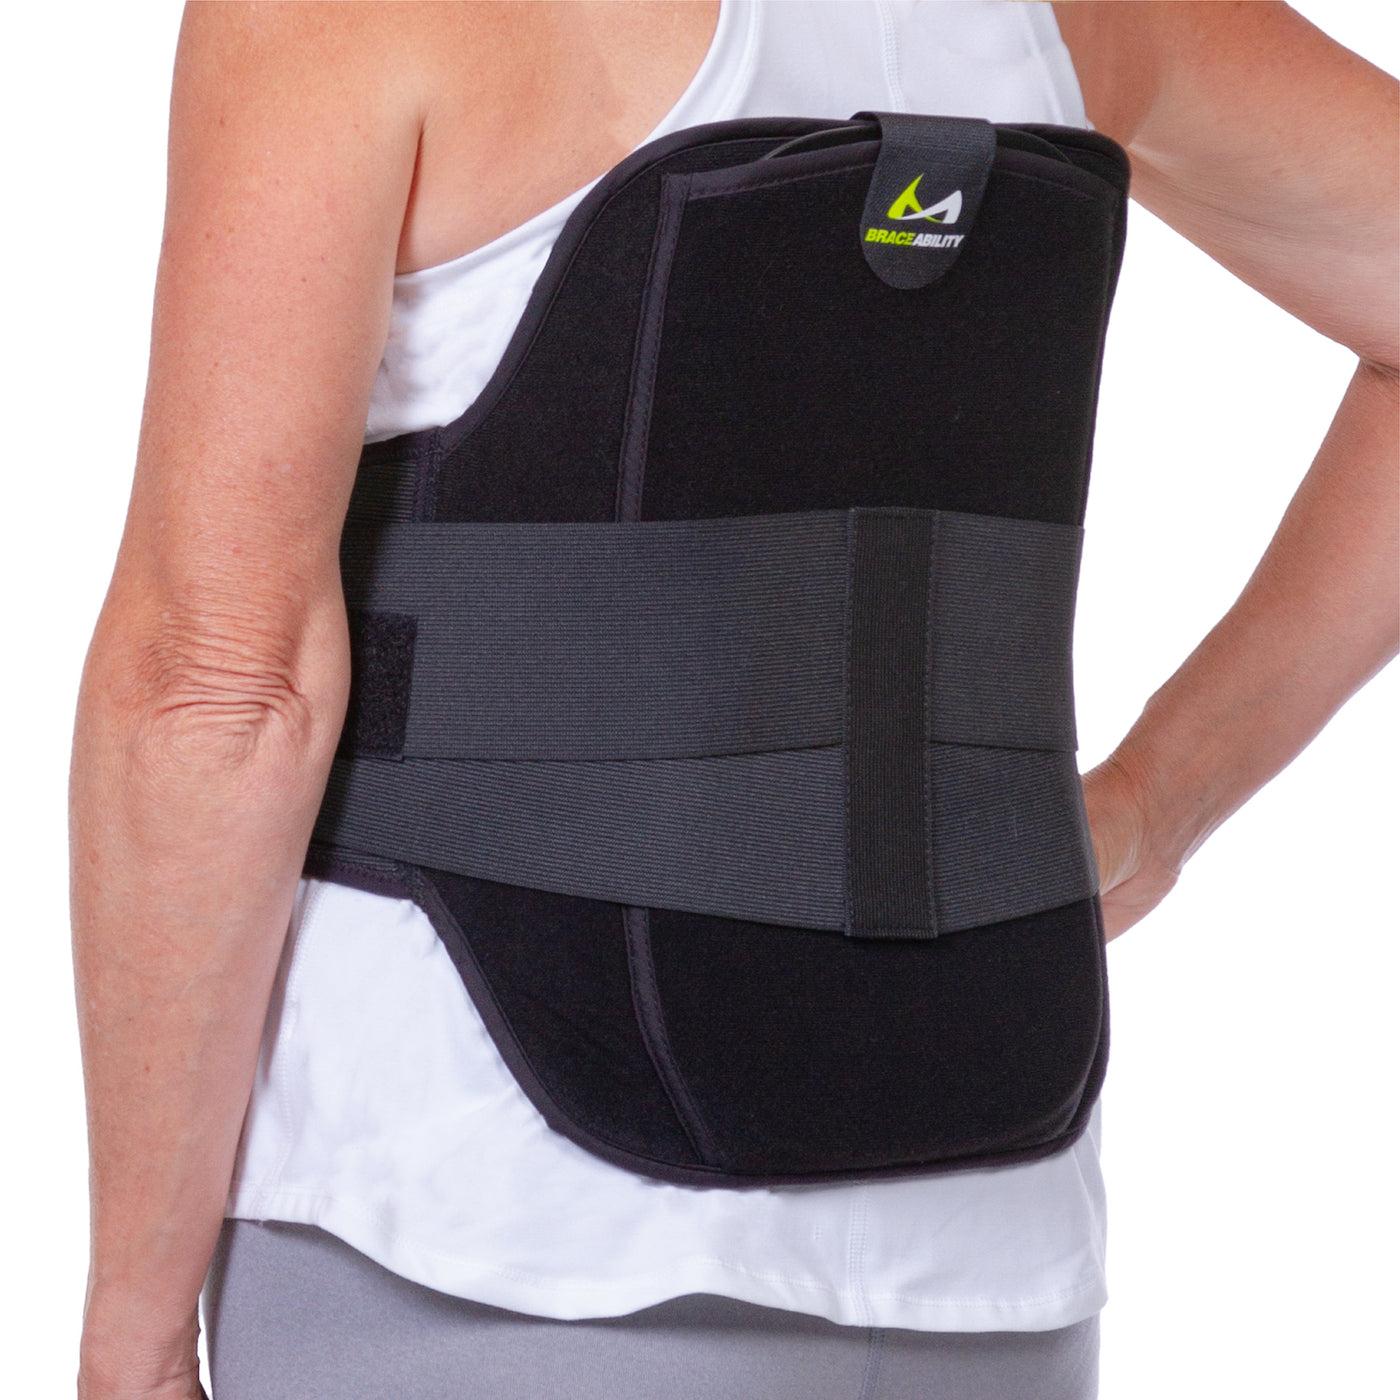 Innovative scoliosis treatment: A back brace